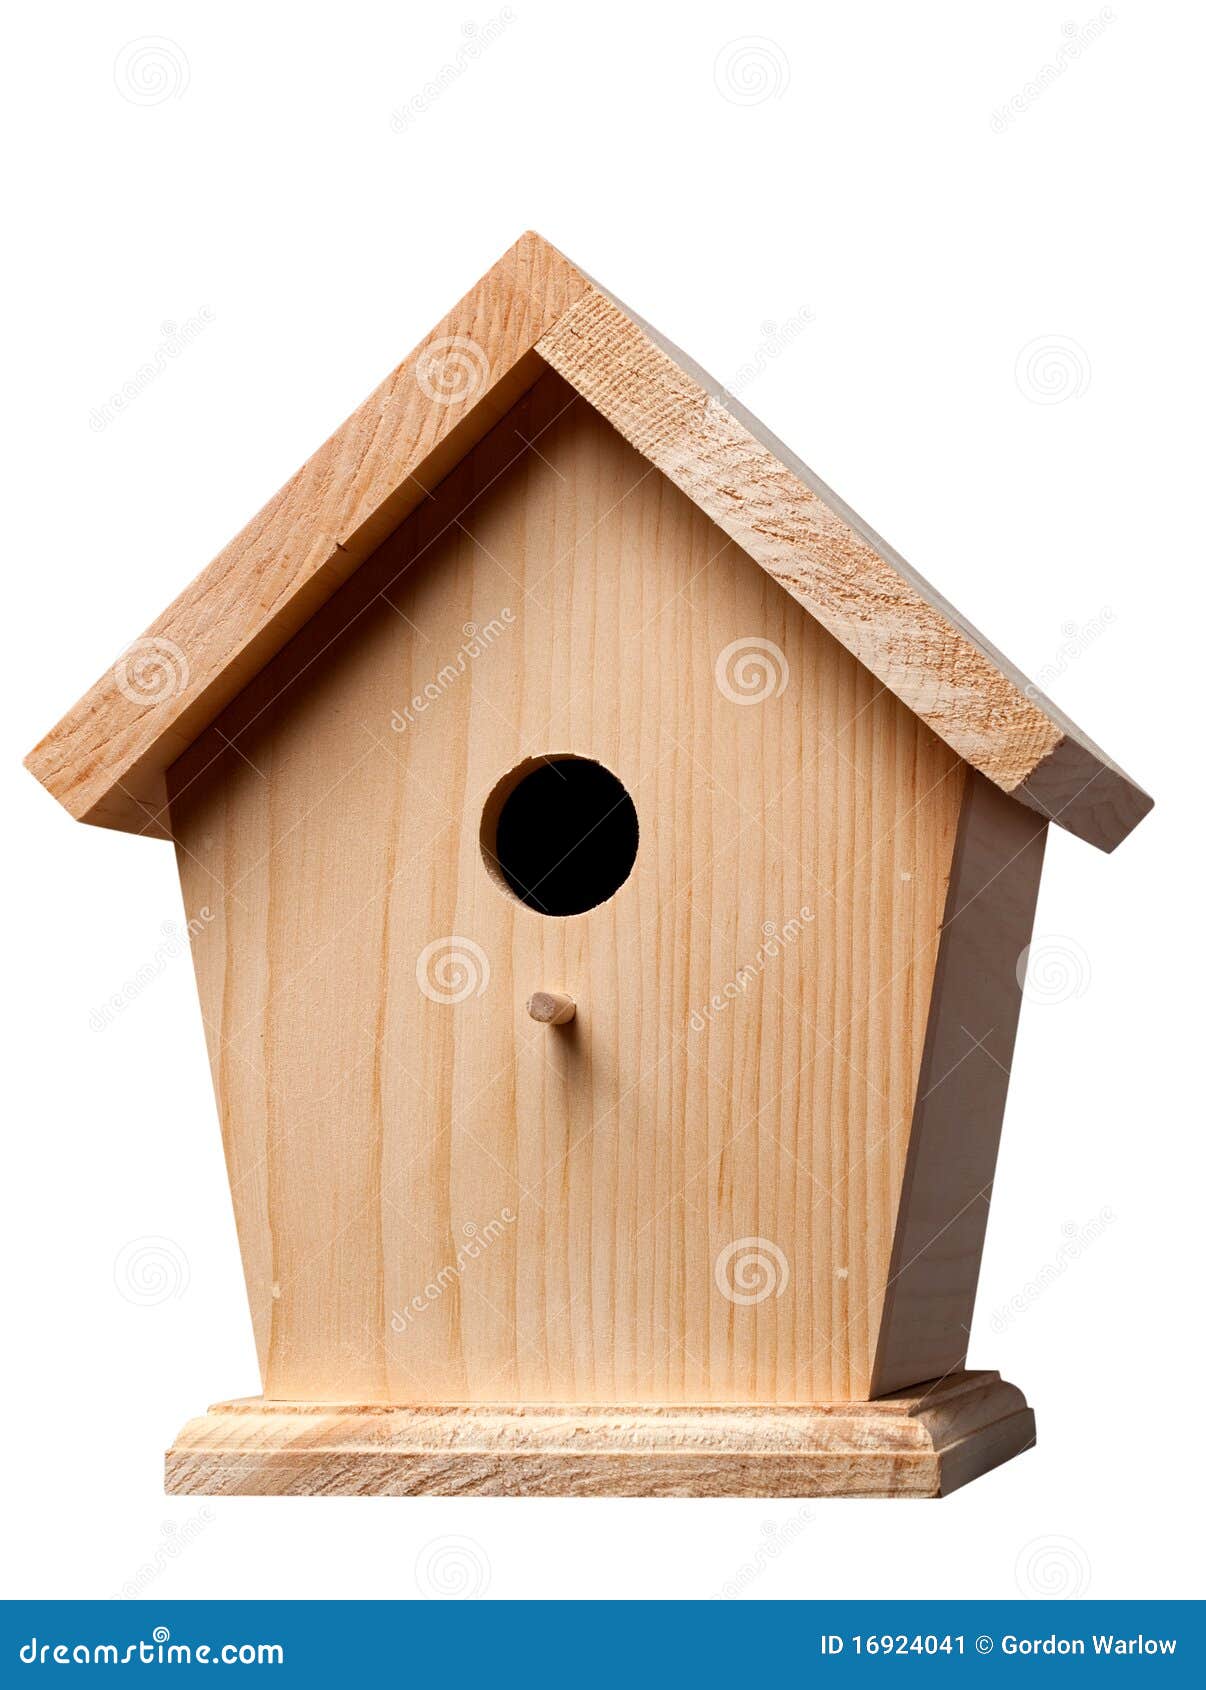 Pine Birdhouse stock image. Image of wooden, hole ...